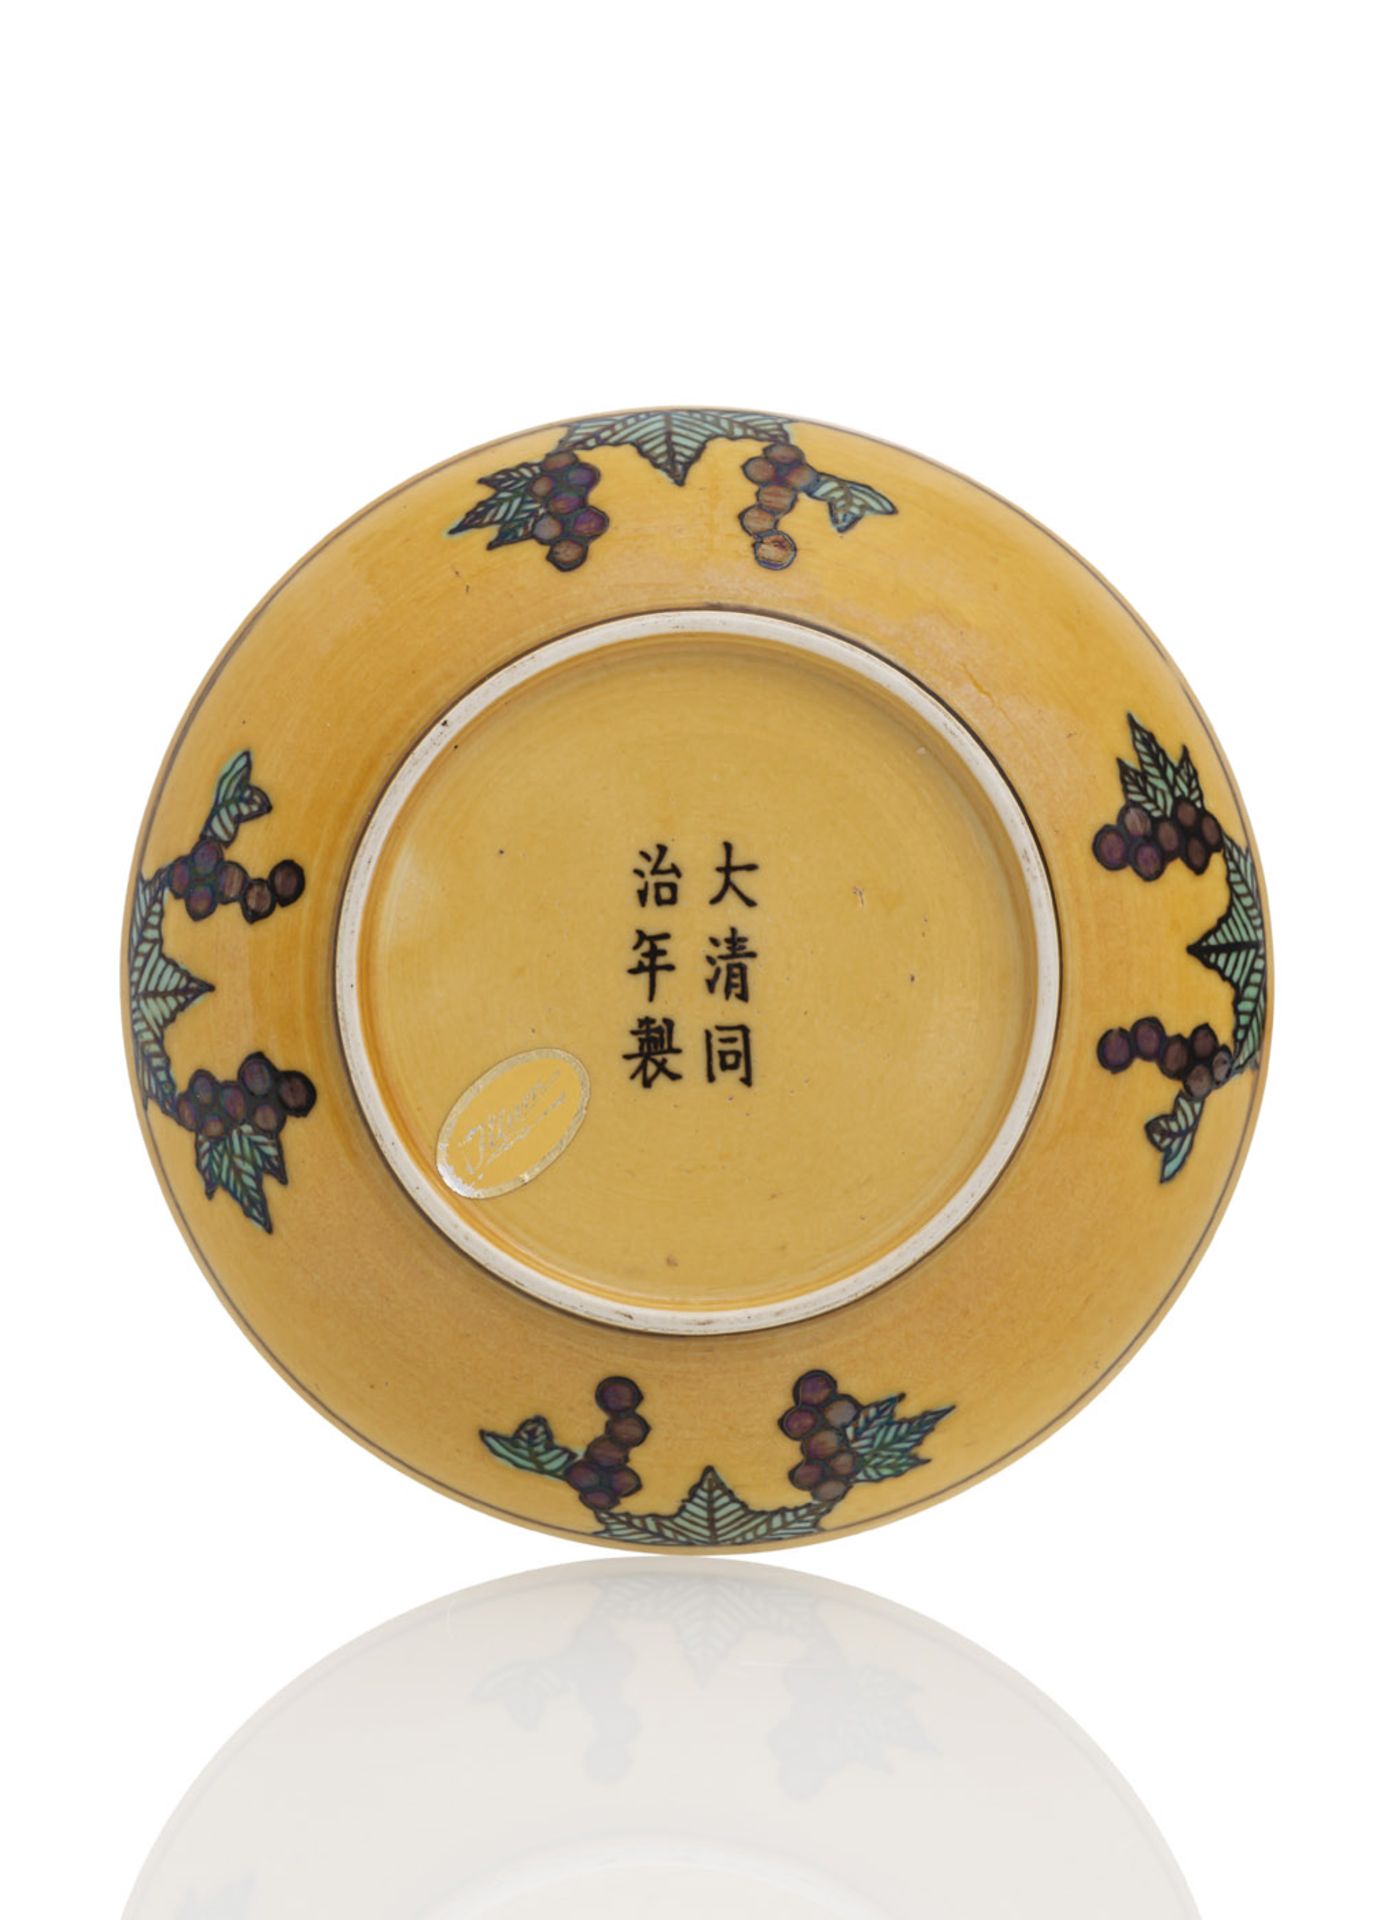 Drachen-Teller aus Porzellan mit 'su sancai'-Dekor von zwei Drachen, eine Flammenperle jagend - Bild 2 aus 2